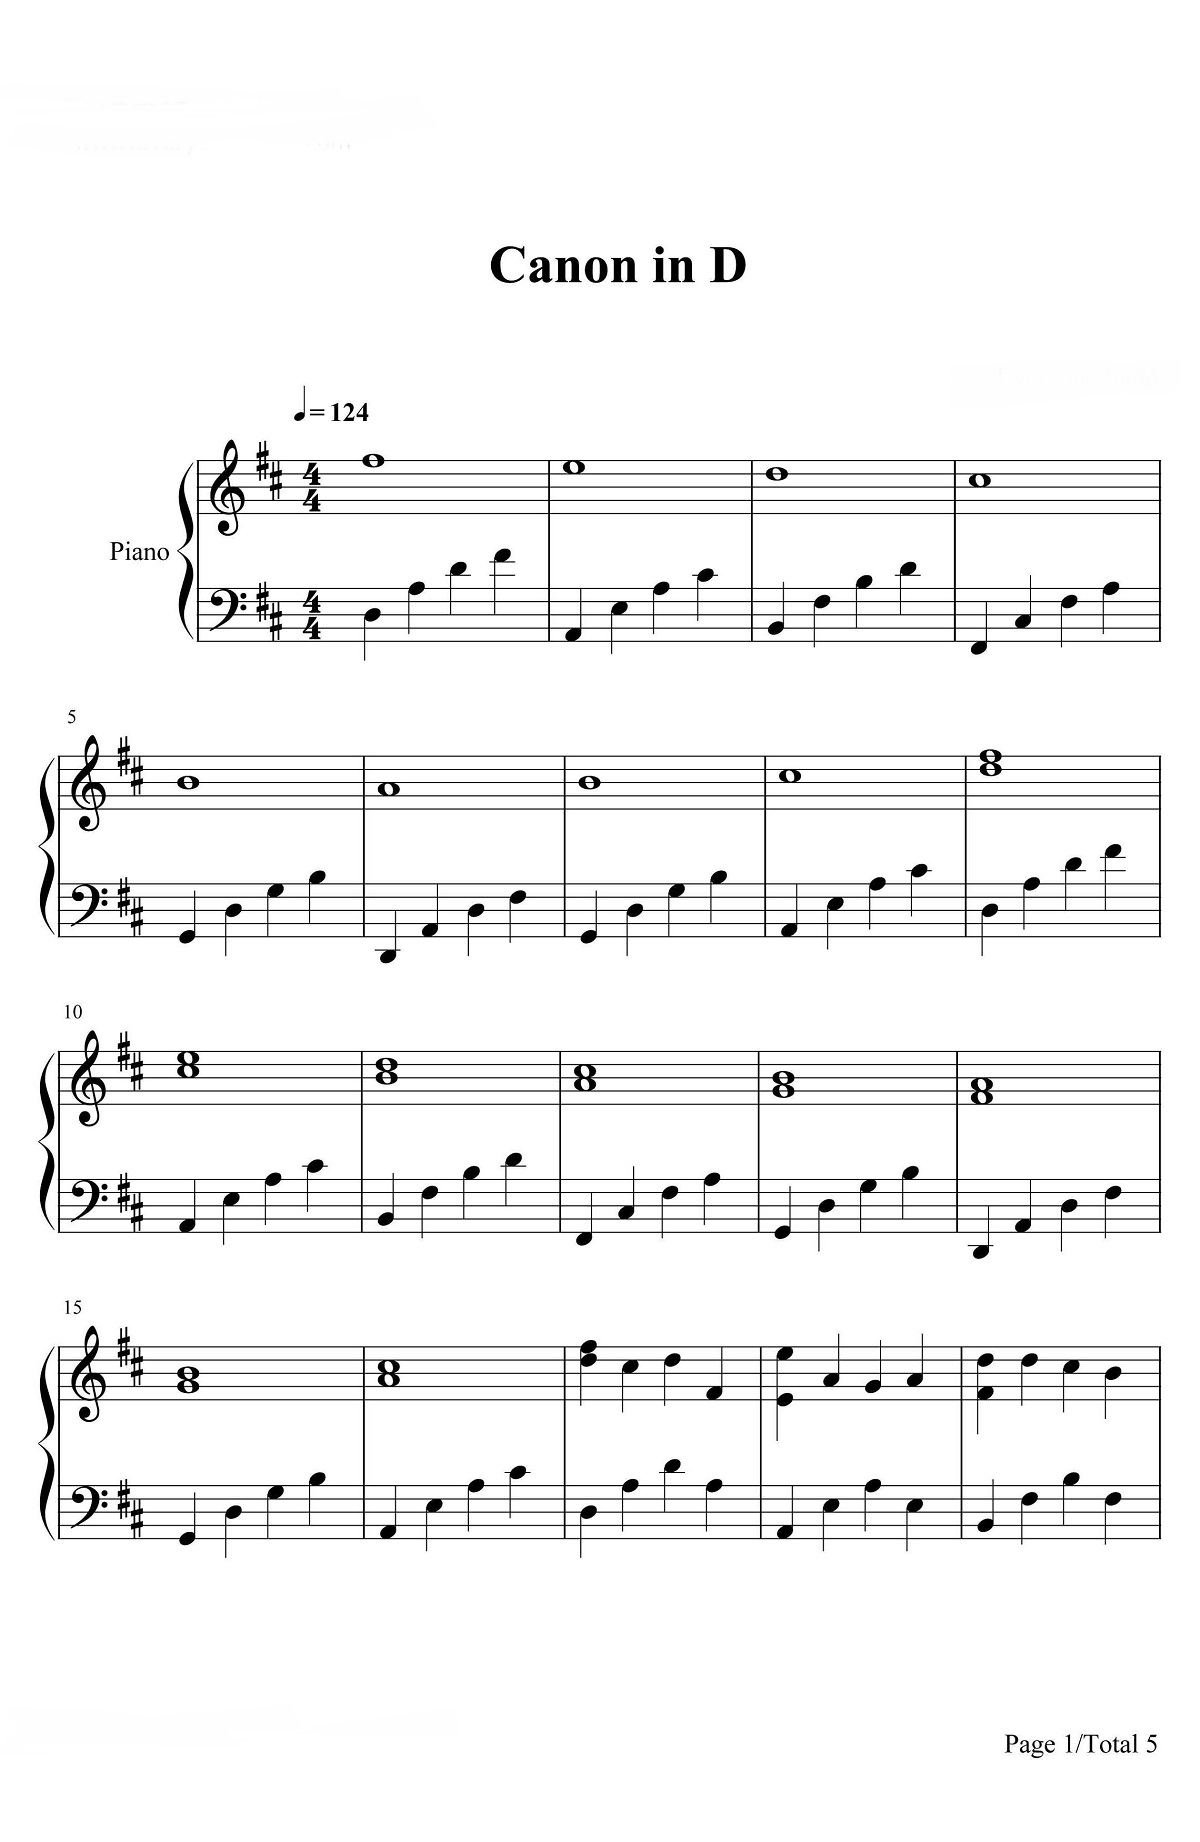 《d大调卡农》的钢琴谱钢琴曲谱 - 帕赫贝尔